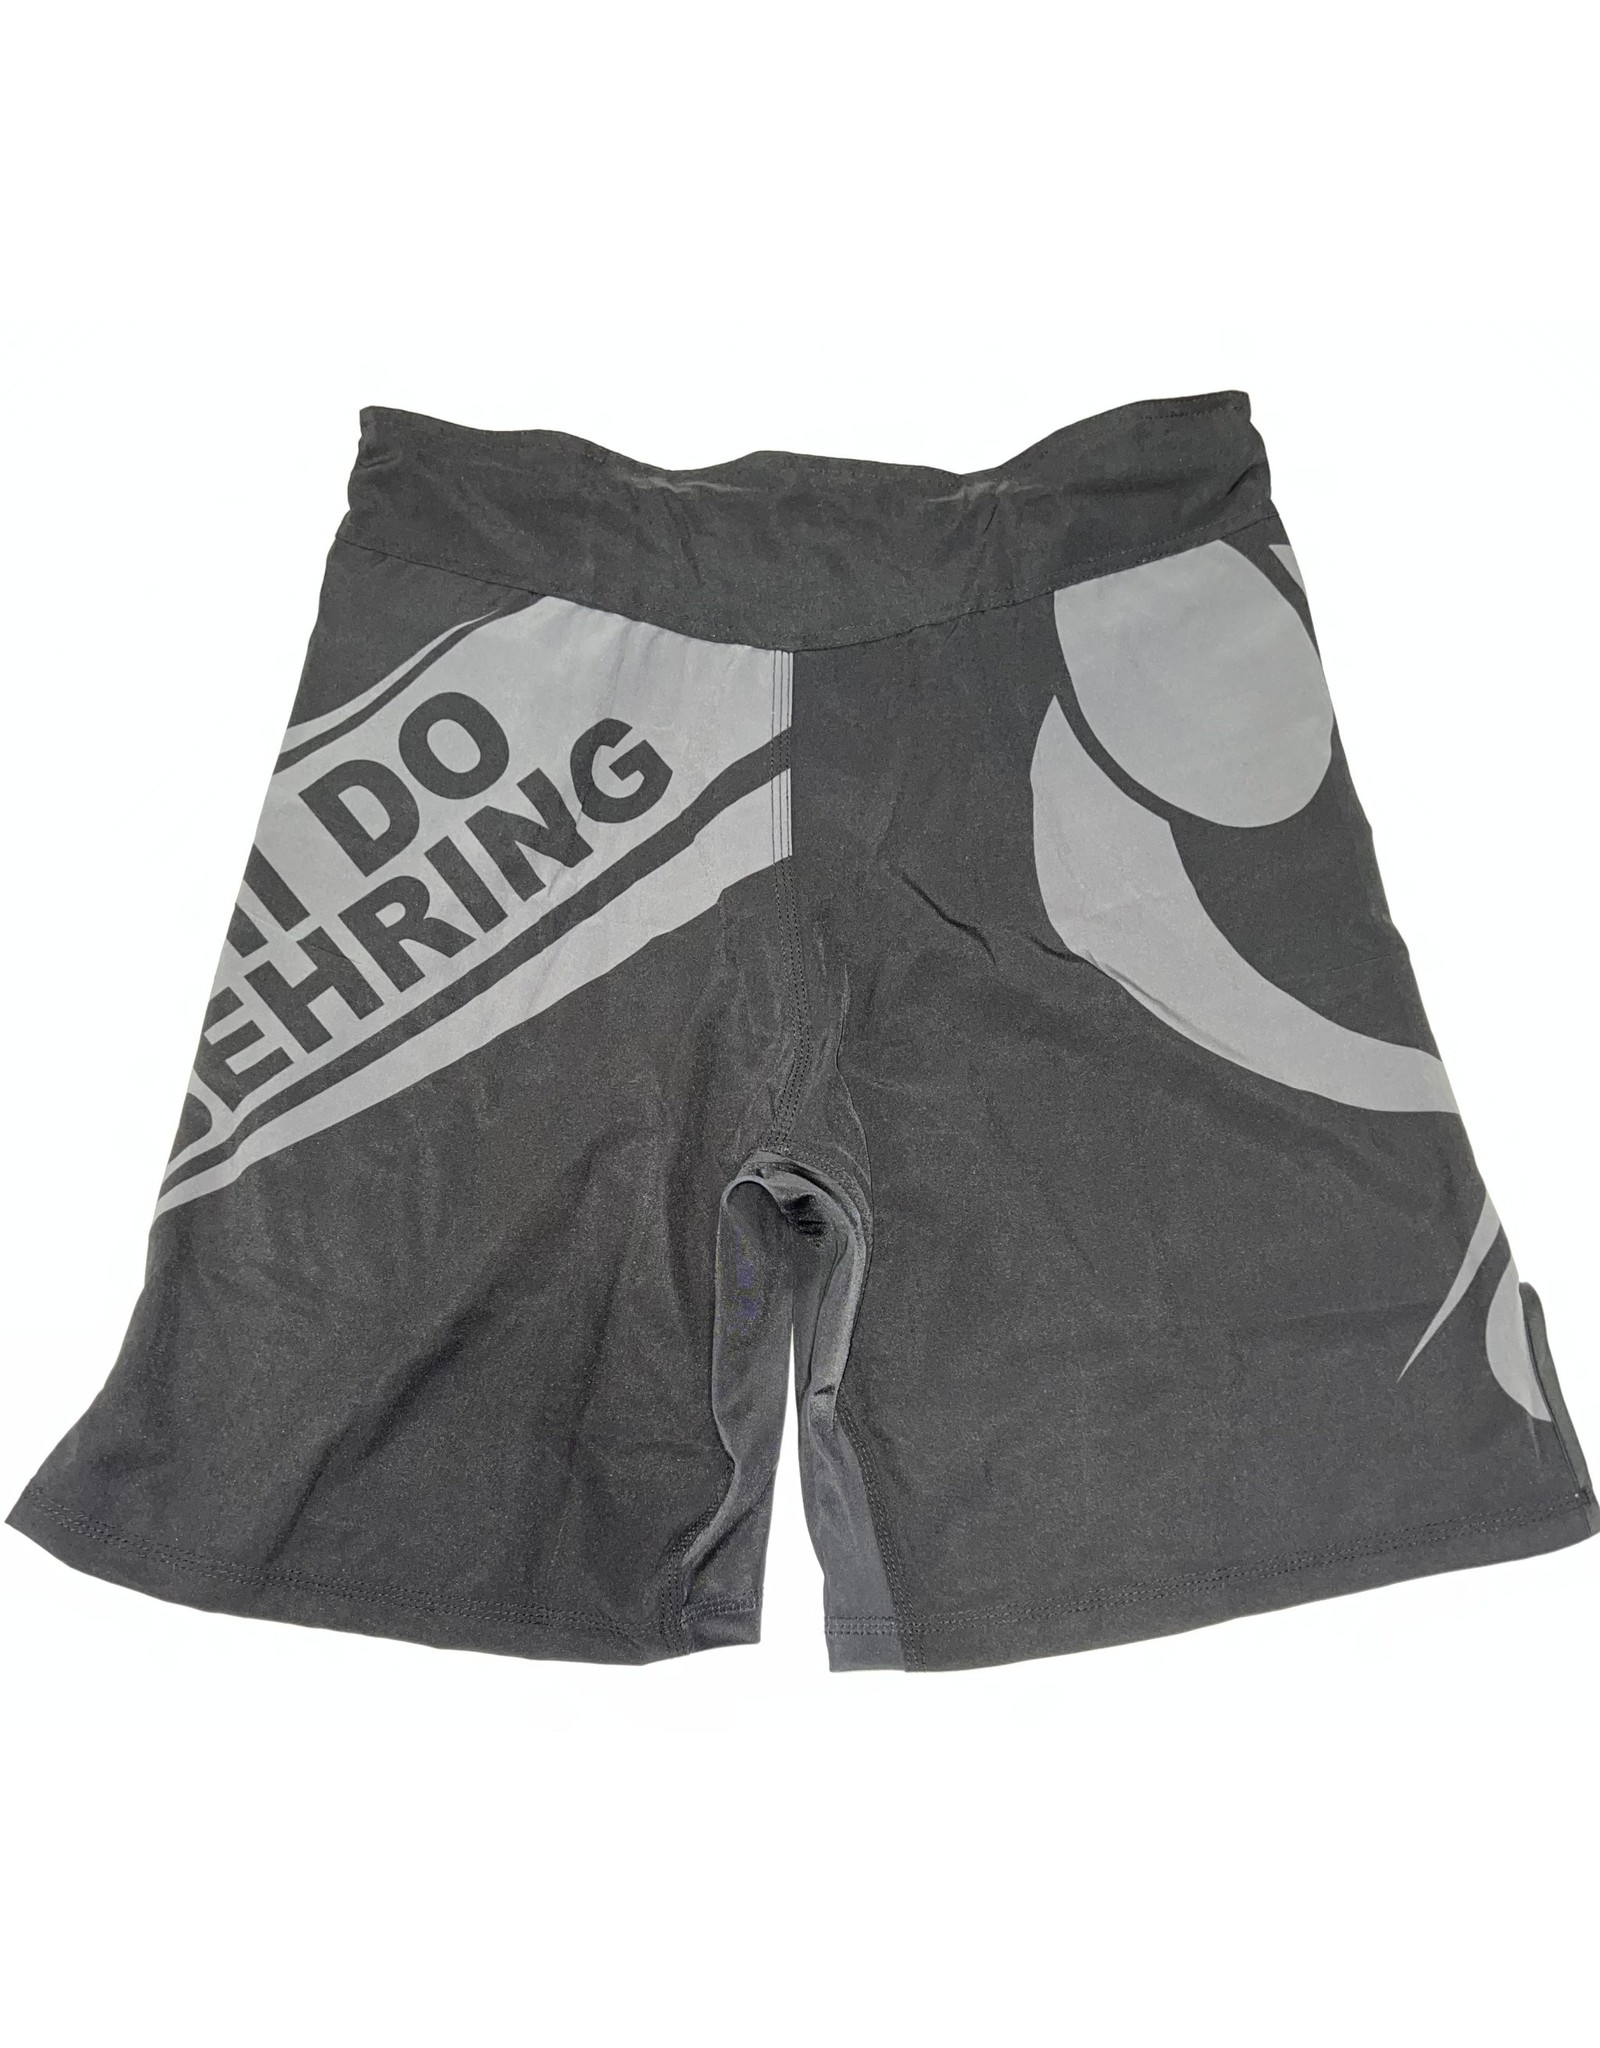 Arashi-Do Behring Wrestling Shorts - Behring